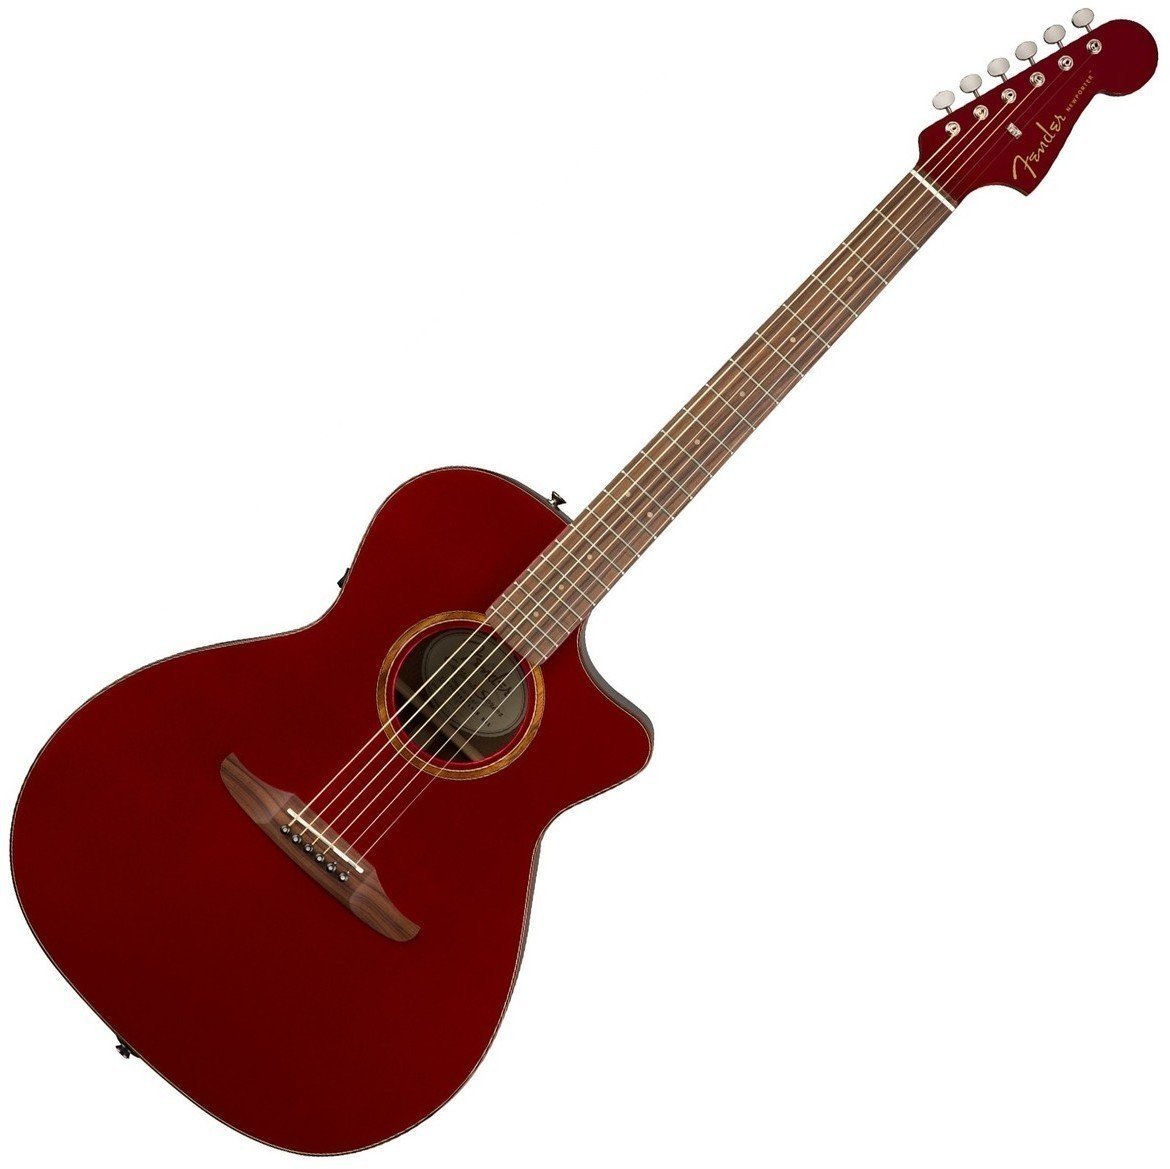 Jumbo elektro-akoestische gitaar Fender Newporter Classic Hot Rod Red Metallic